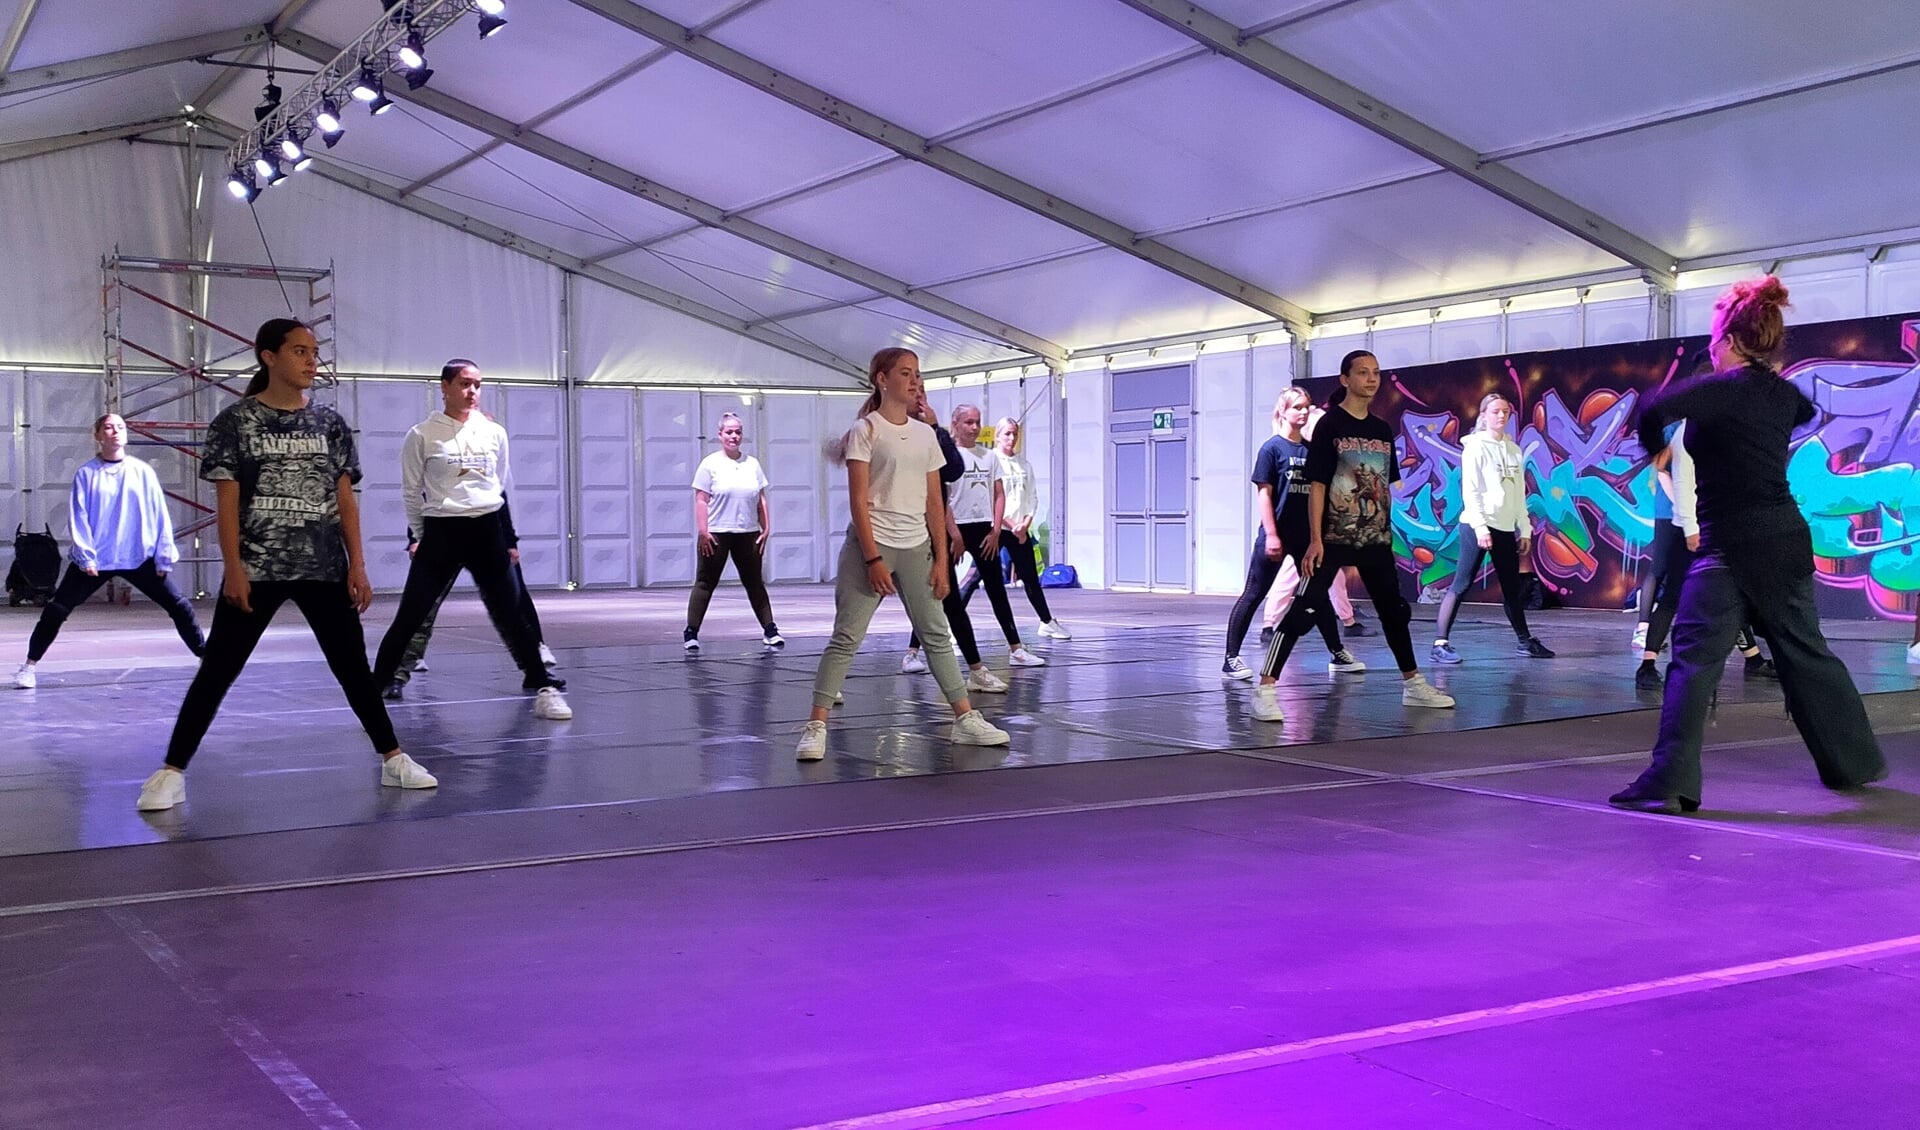 Esther Nederpelt gaf afgelopen zomer een clinic moderne dans tijdens het Try Out Park in Den Helder. Iets soortgelijks kunnen de deelnemers aan de December Dansmaand ook verwachten, maar dan van Tara Masimer.